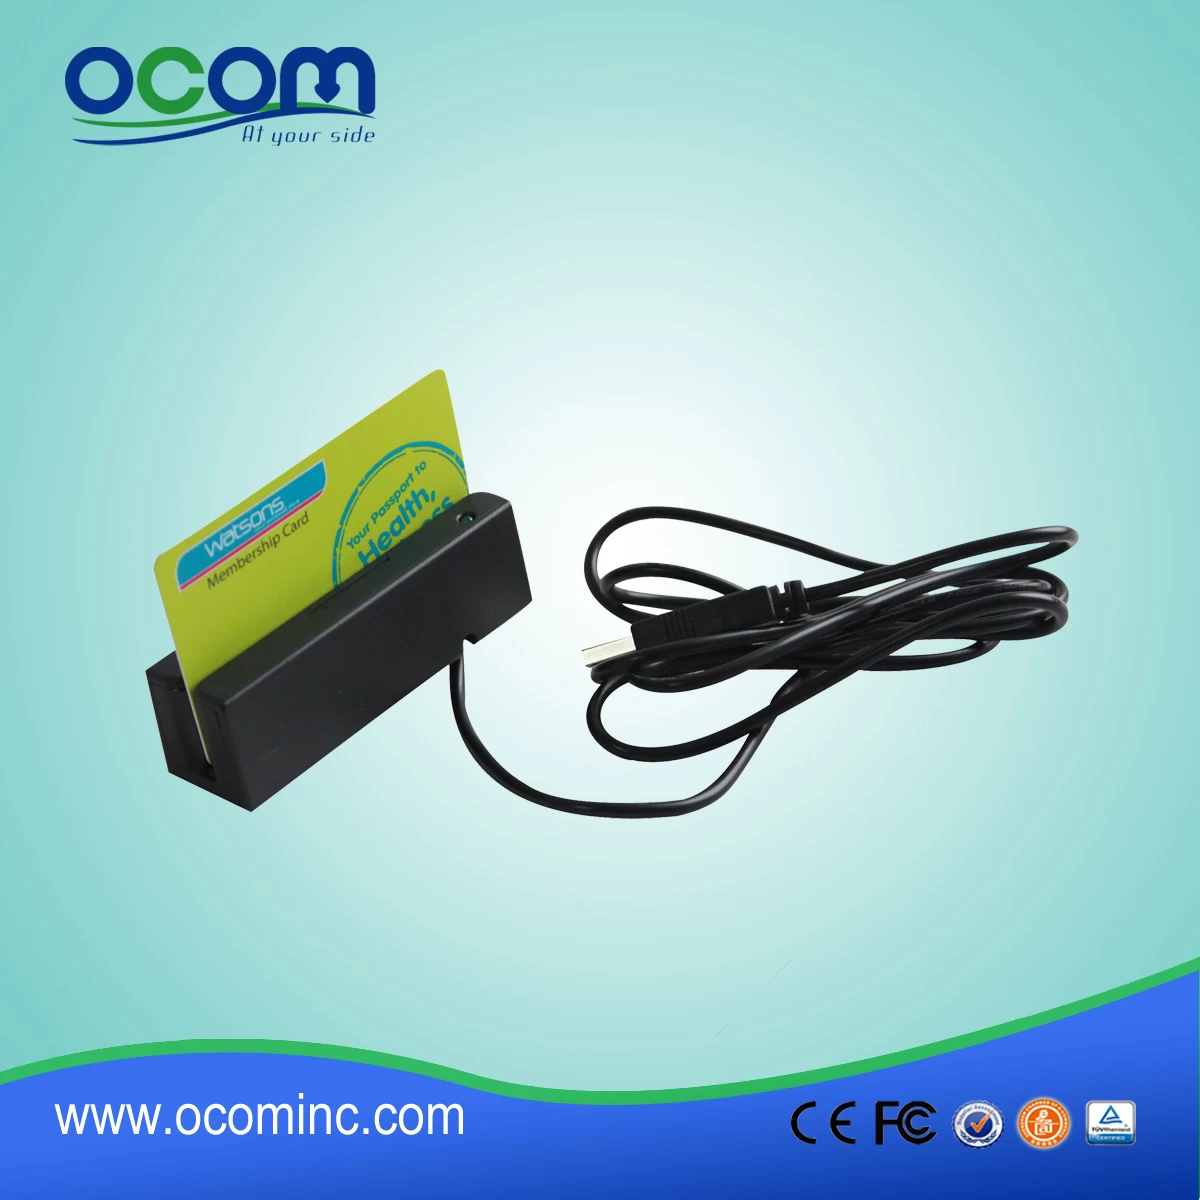 CR1300 Mini Portable OTG Magnetic Stripe Card Reader